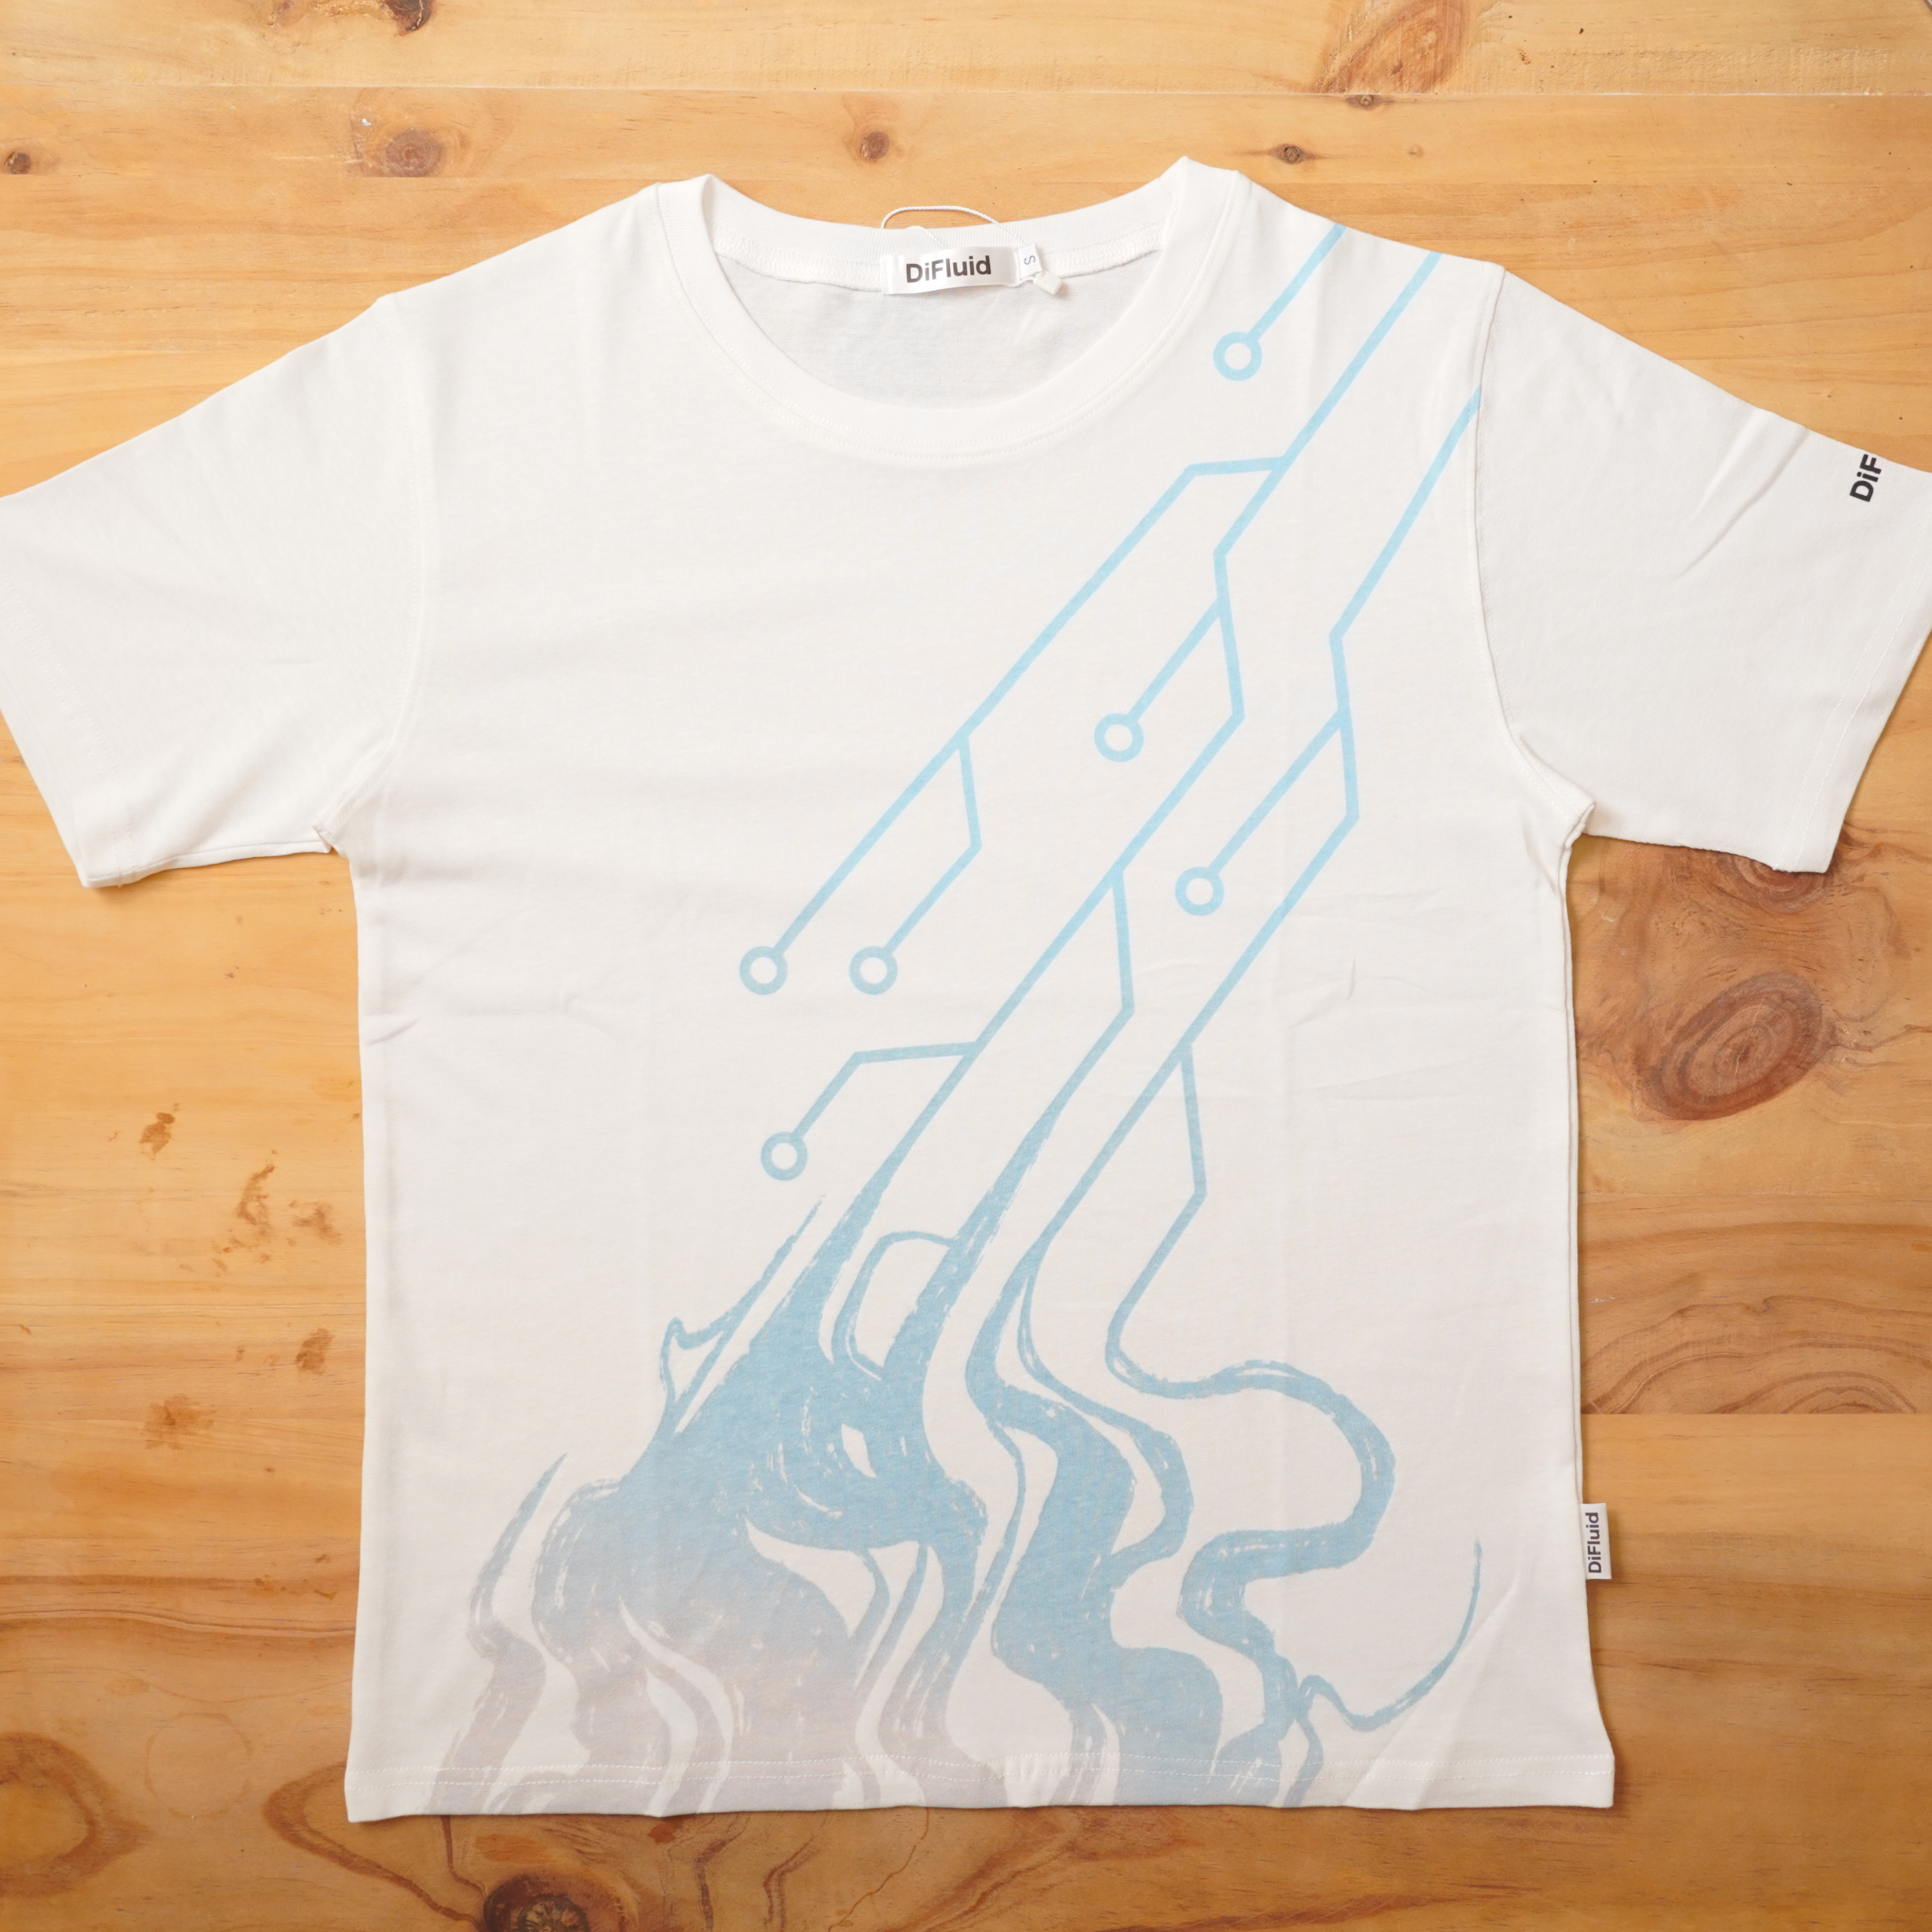 Digitize Fluid Hemp T-Shirt